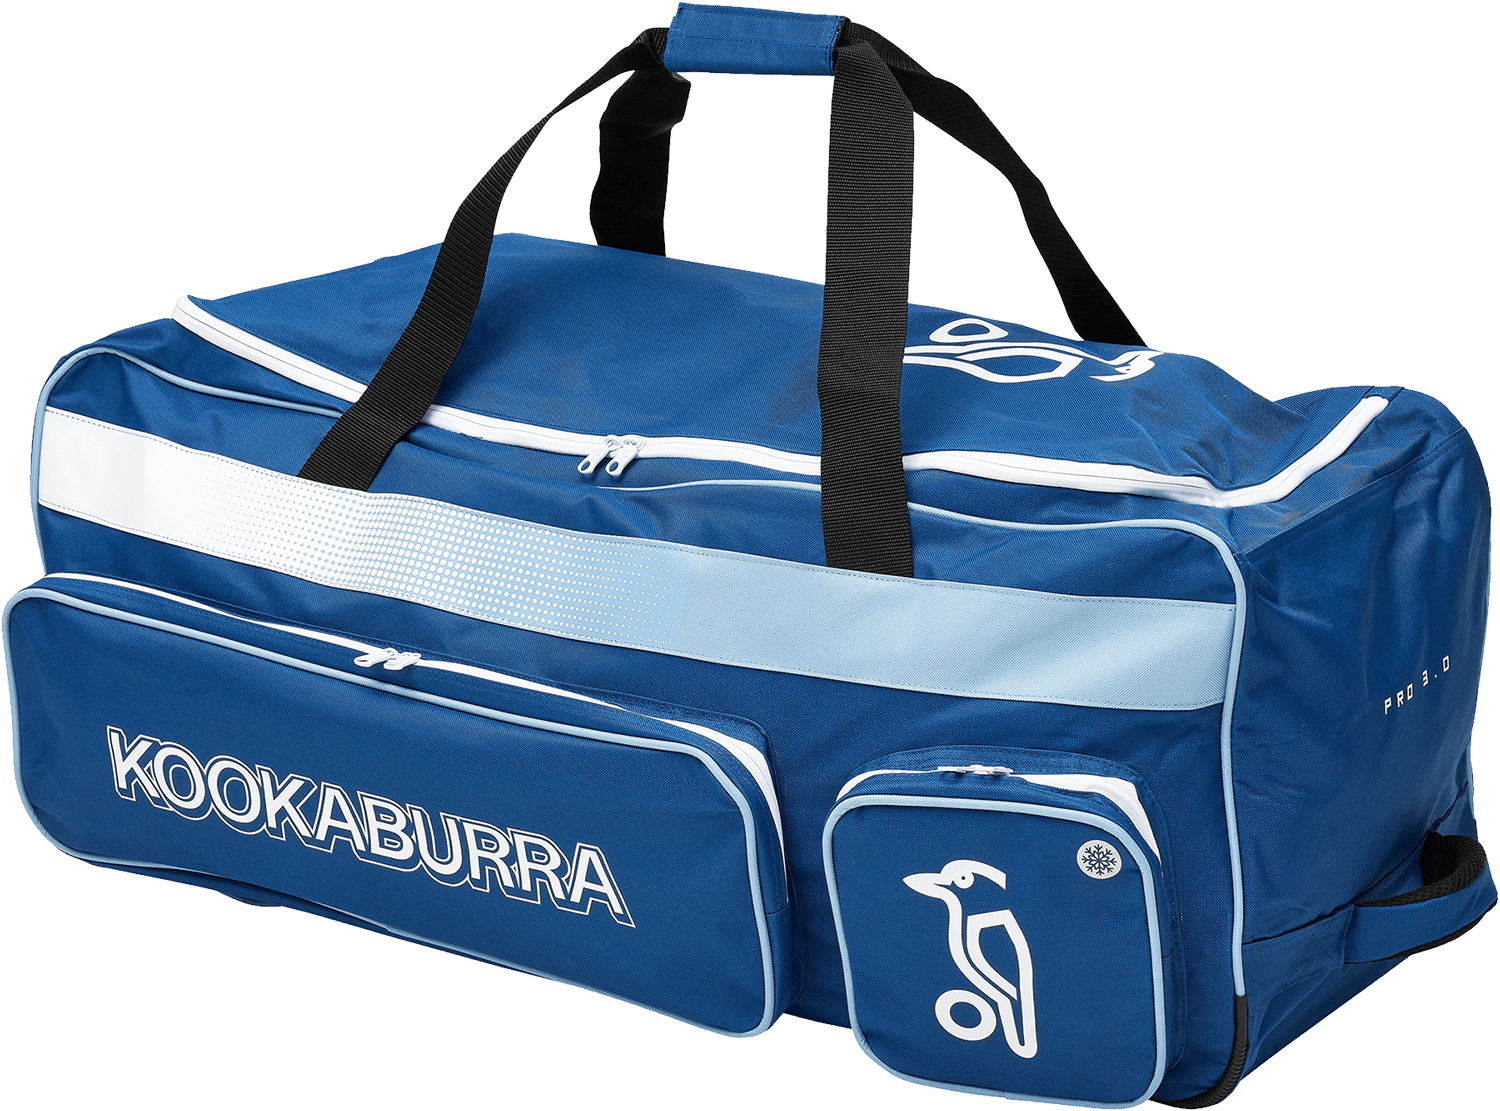 Kookaburra Cricket Bags Blue Kookaburra 3.0 Wheelie Cricket Bag